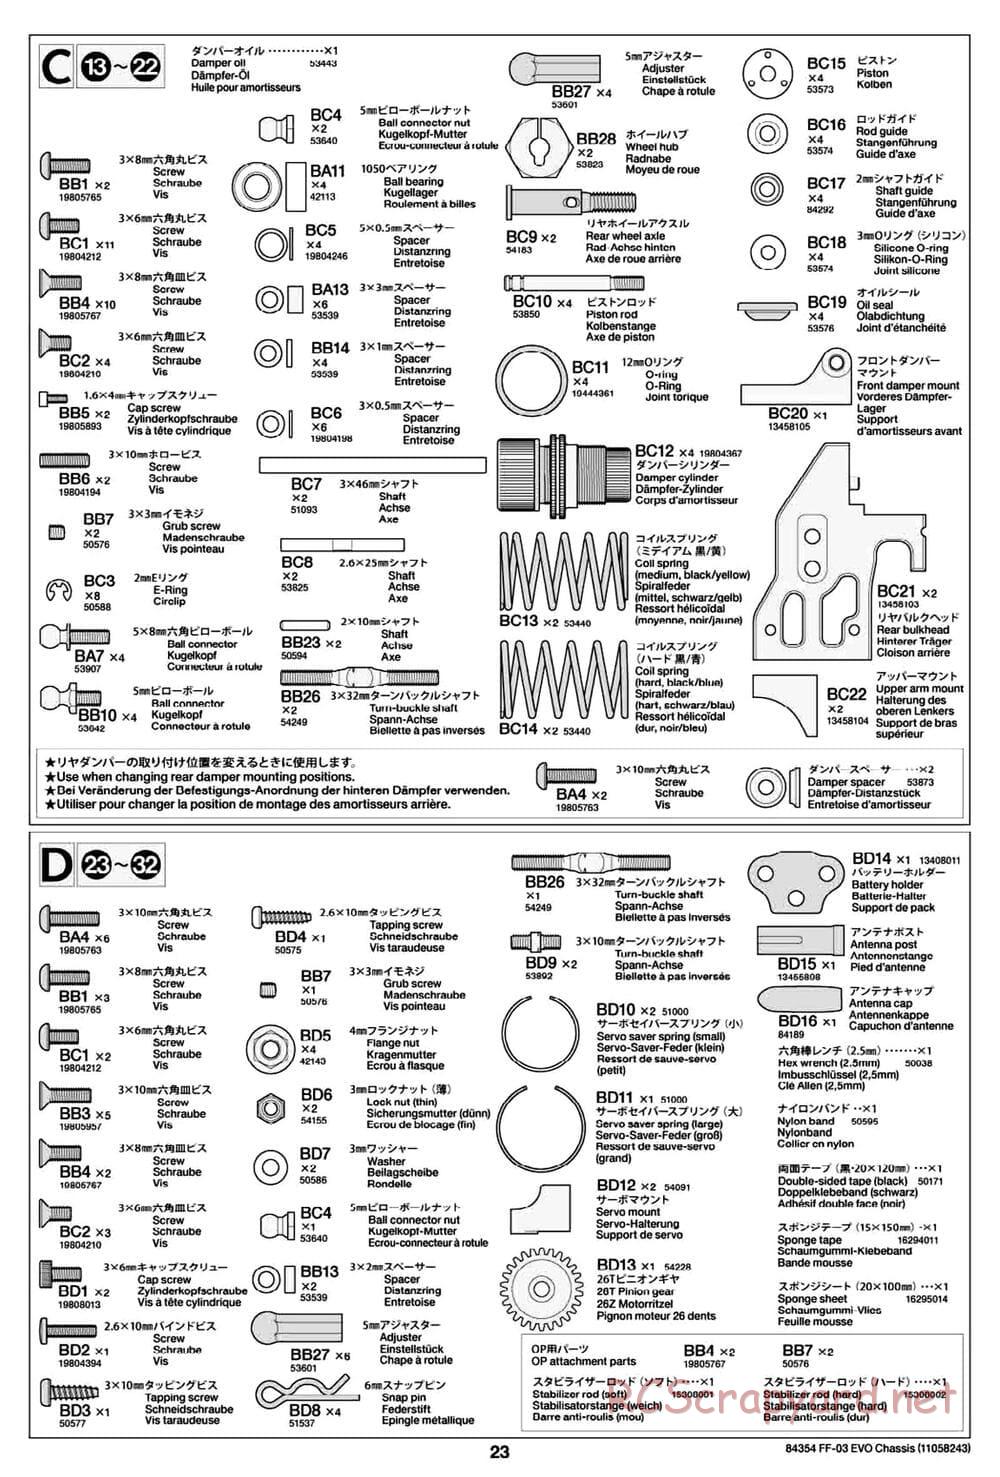 Tamiya - FF-03 Evo Chassis - Manual - Page 23